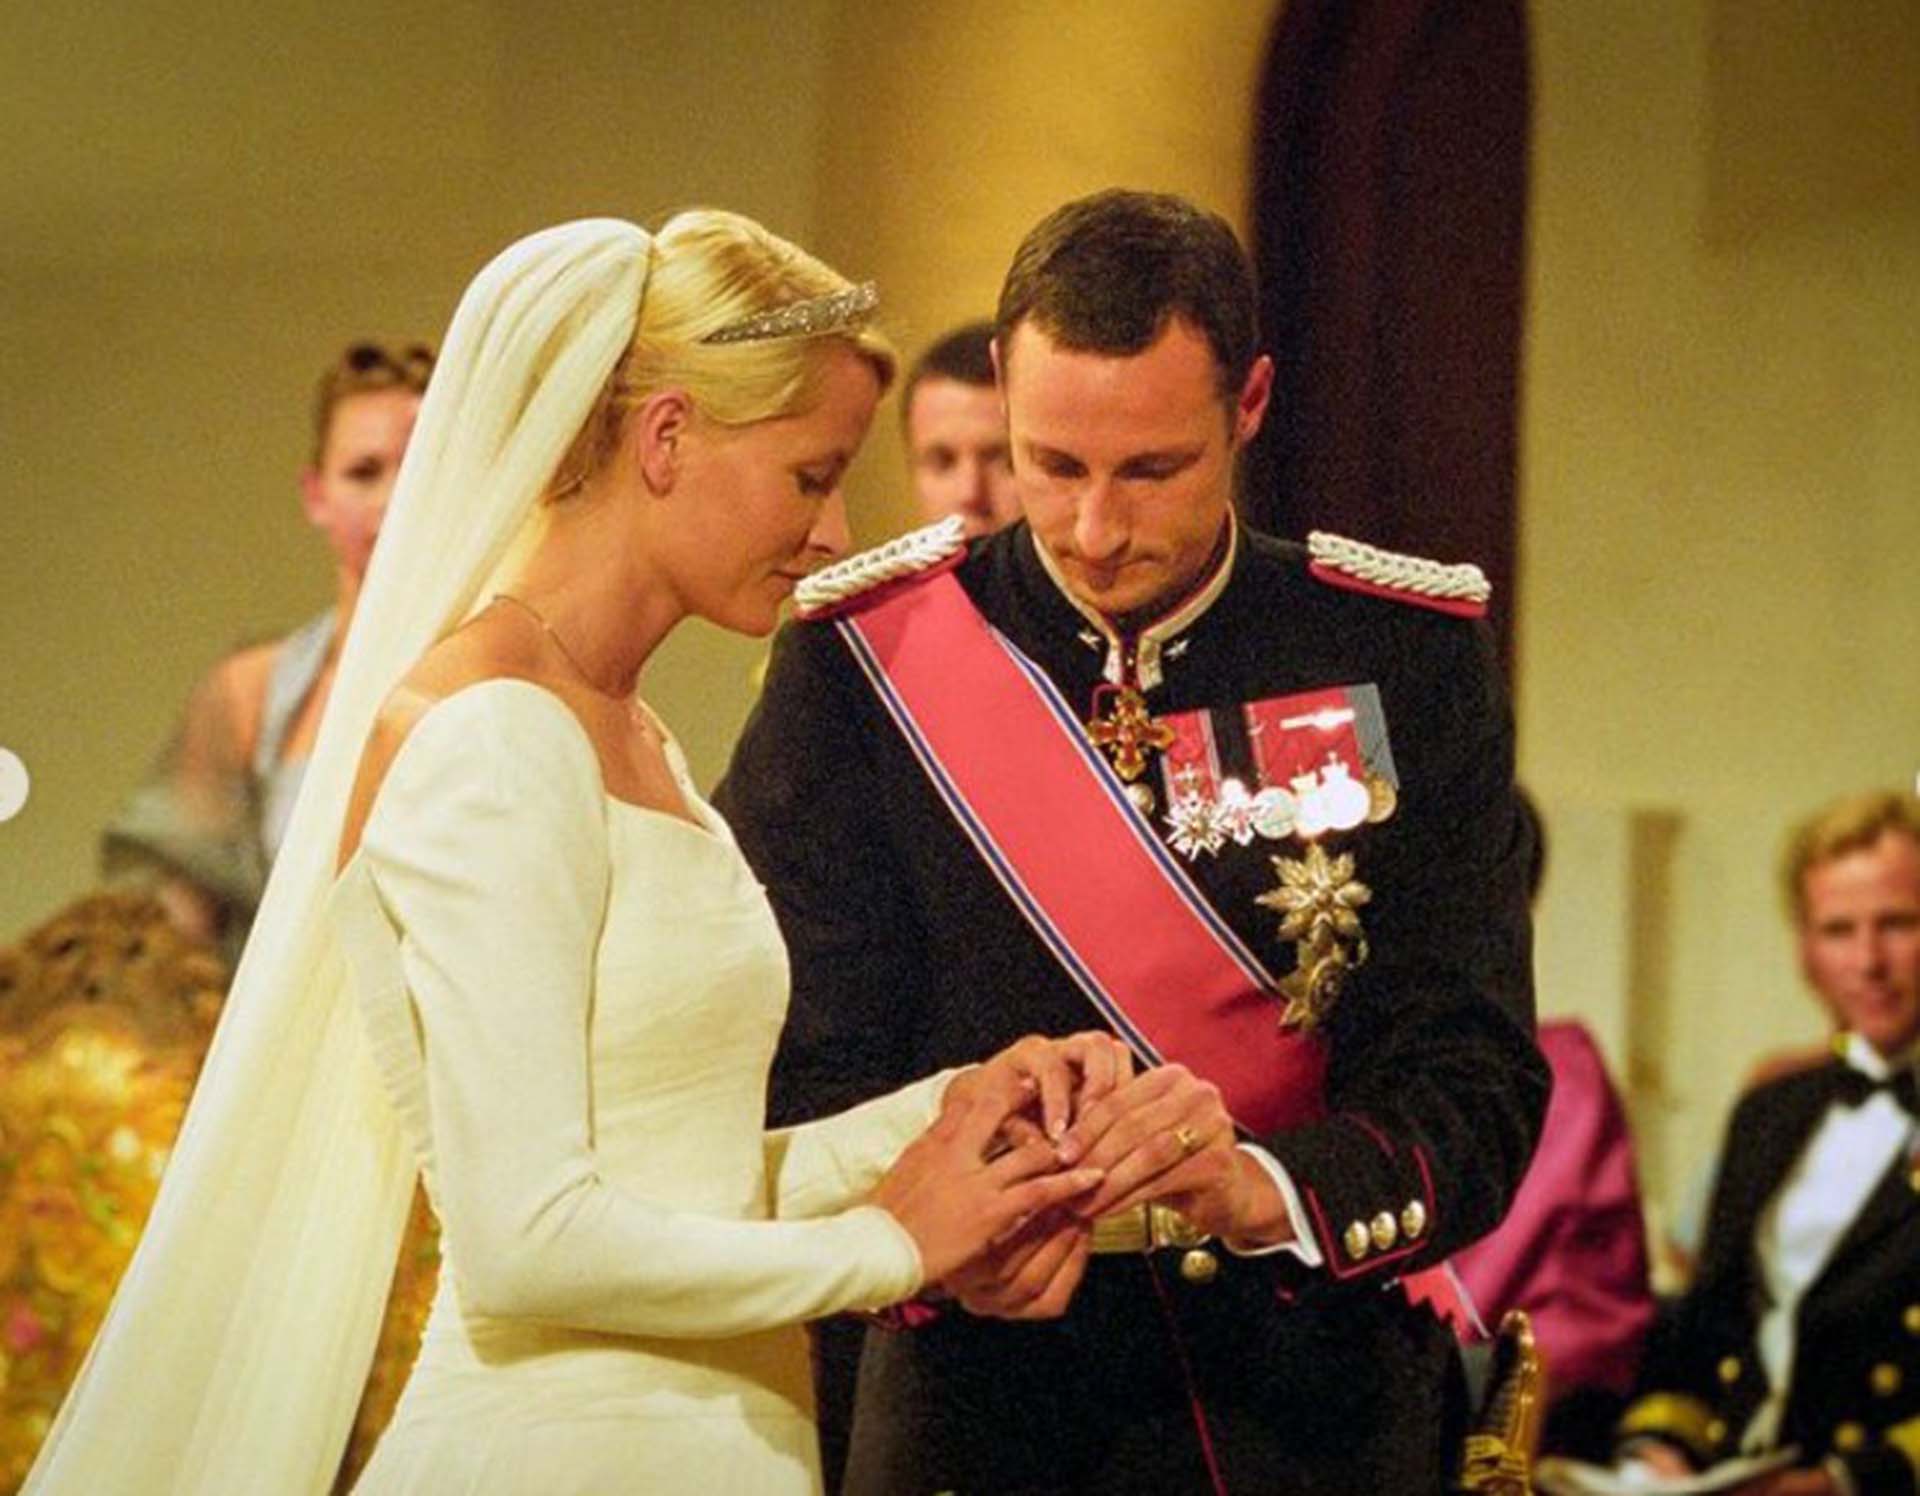 La boda entre Mette-Marit y Haakon de Noruega